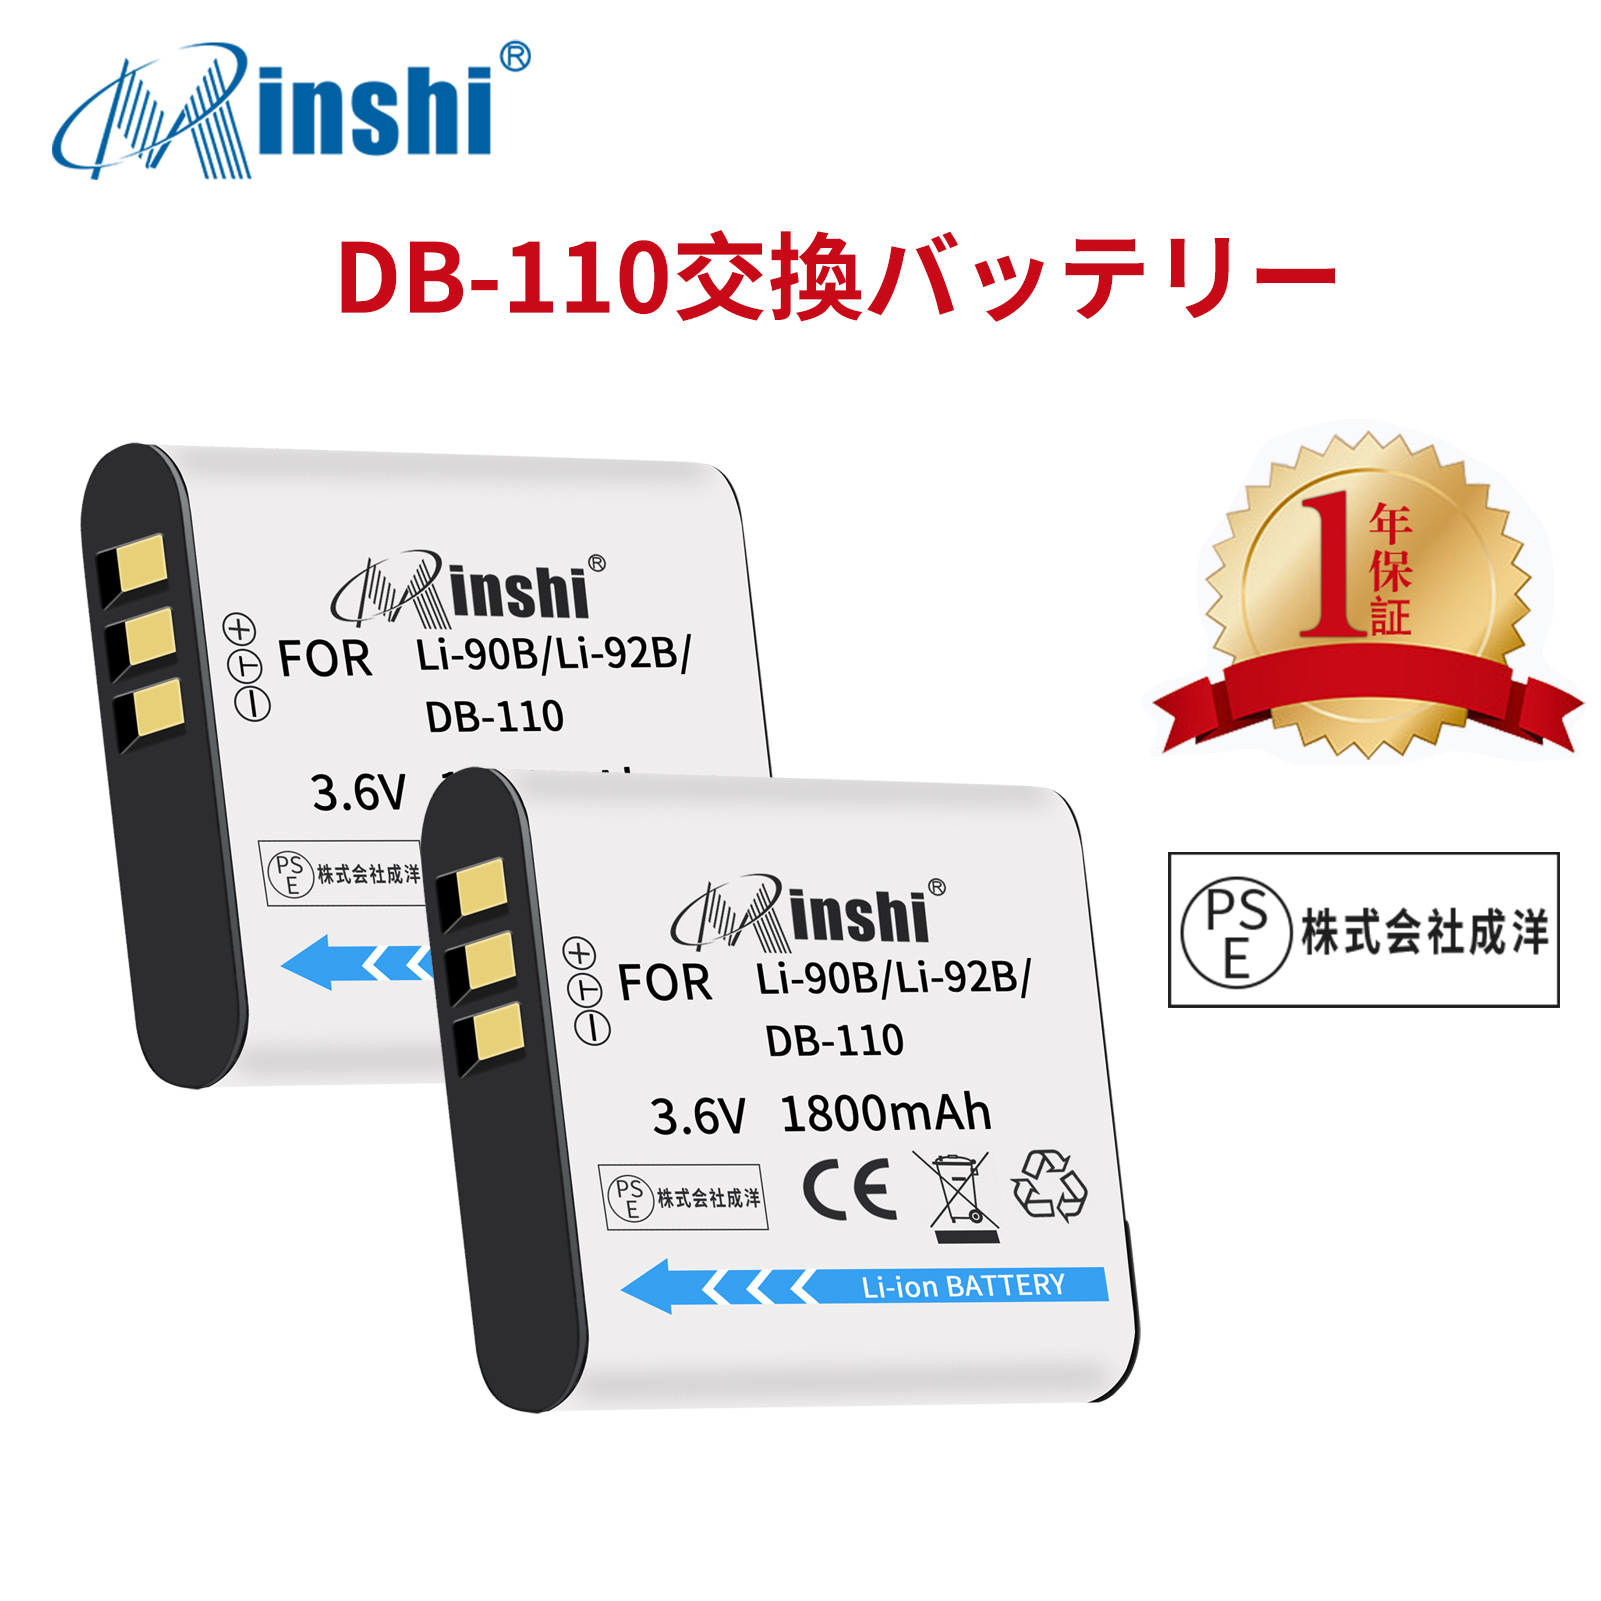 【２個セット】minshi OLYMPUS Stylus SH-2 【1800mAh 3.6V】PSE認定済 高品質LI-92B互換バッテリーWHG